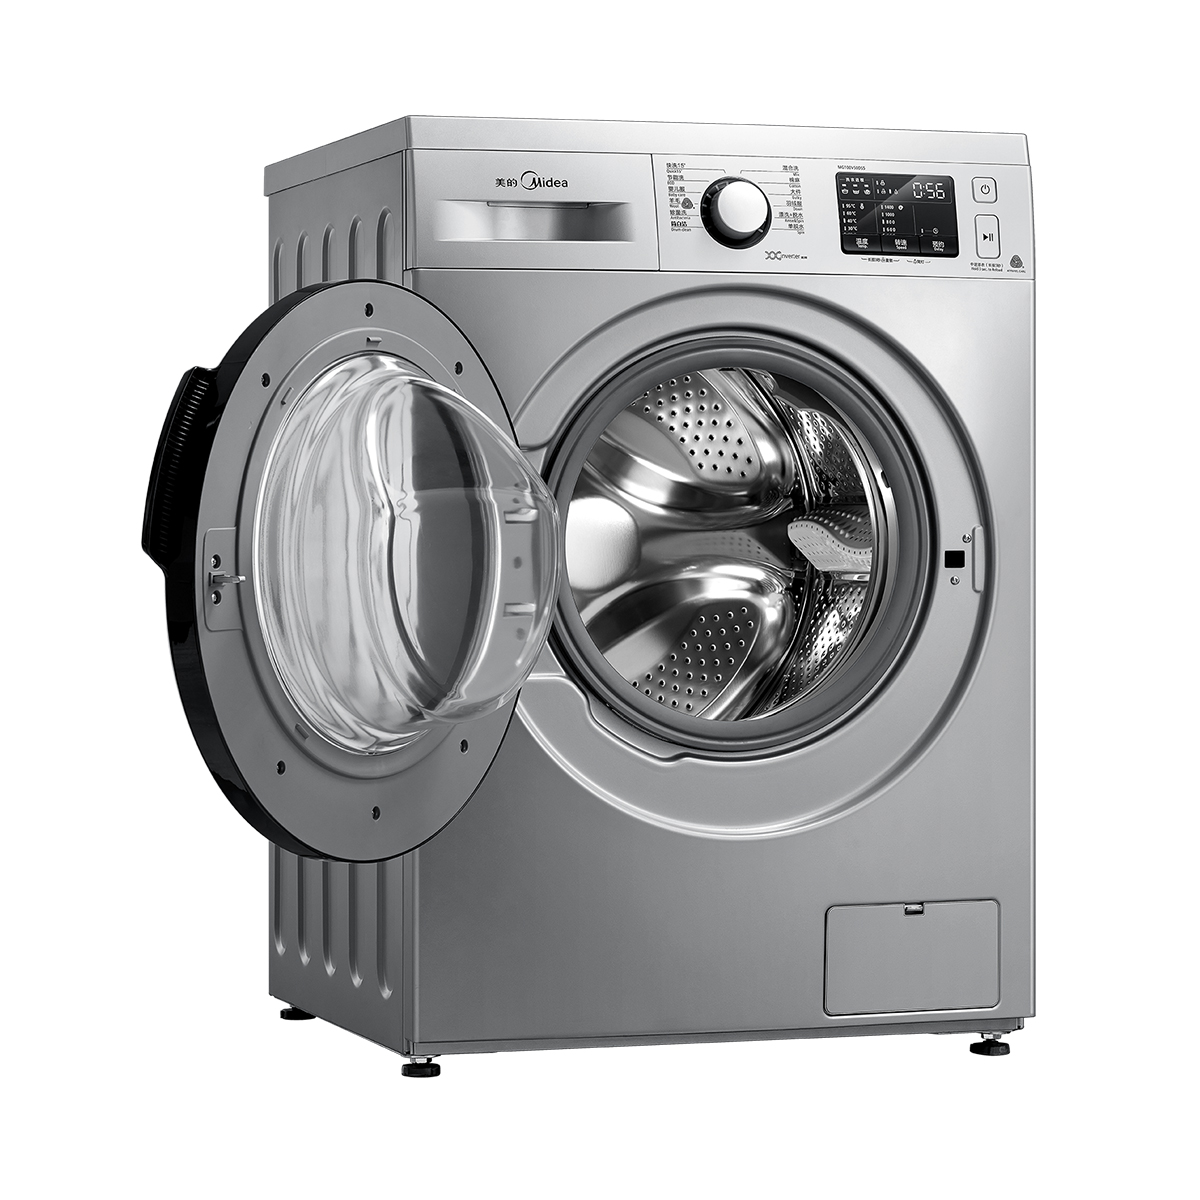 【美的TD100VT096WDG】美的洗衣机,TD100VT096WDG,官方报价_规格_参数_图片-美的商城